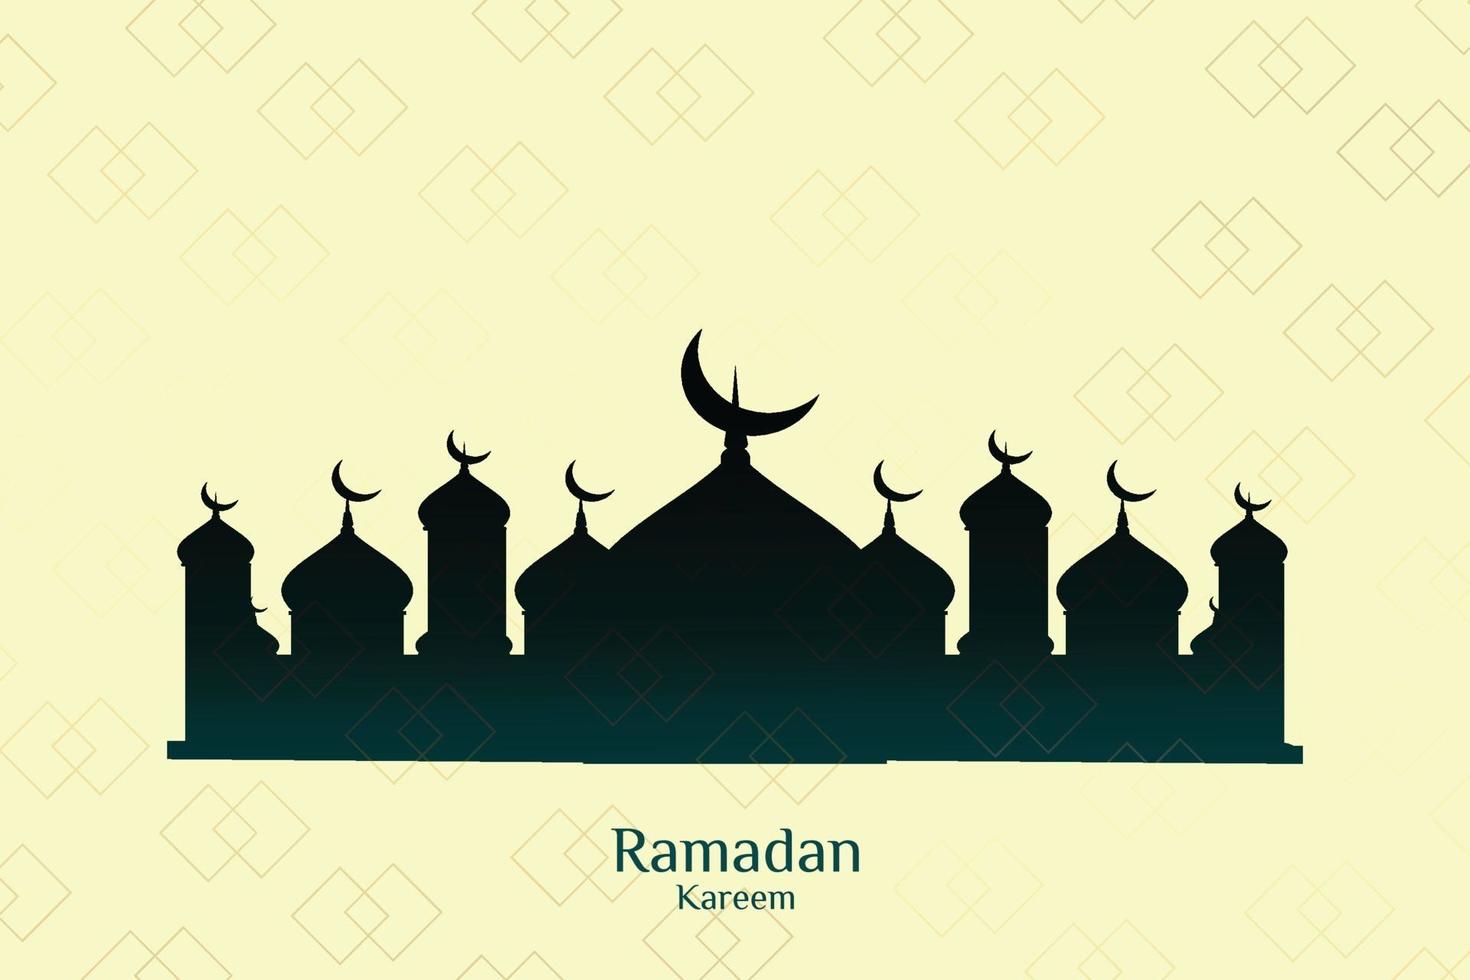 islamitische achtergrond gratis download gouden stijl vector